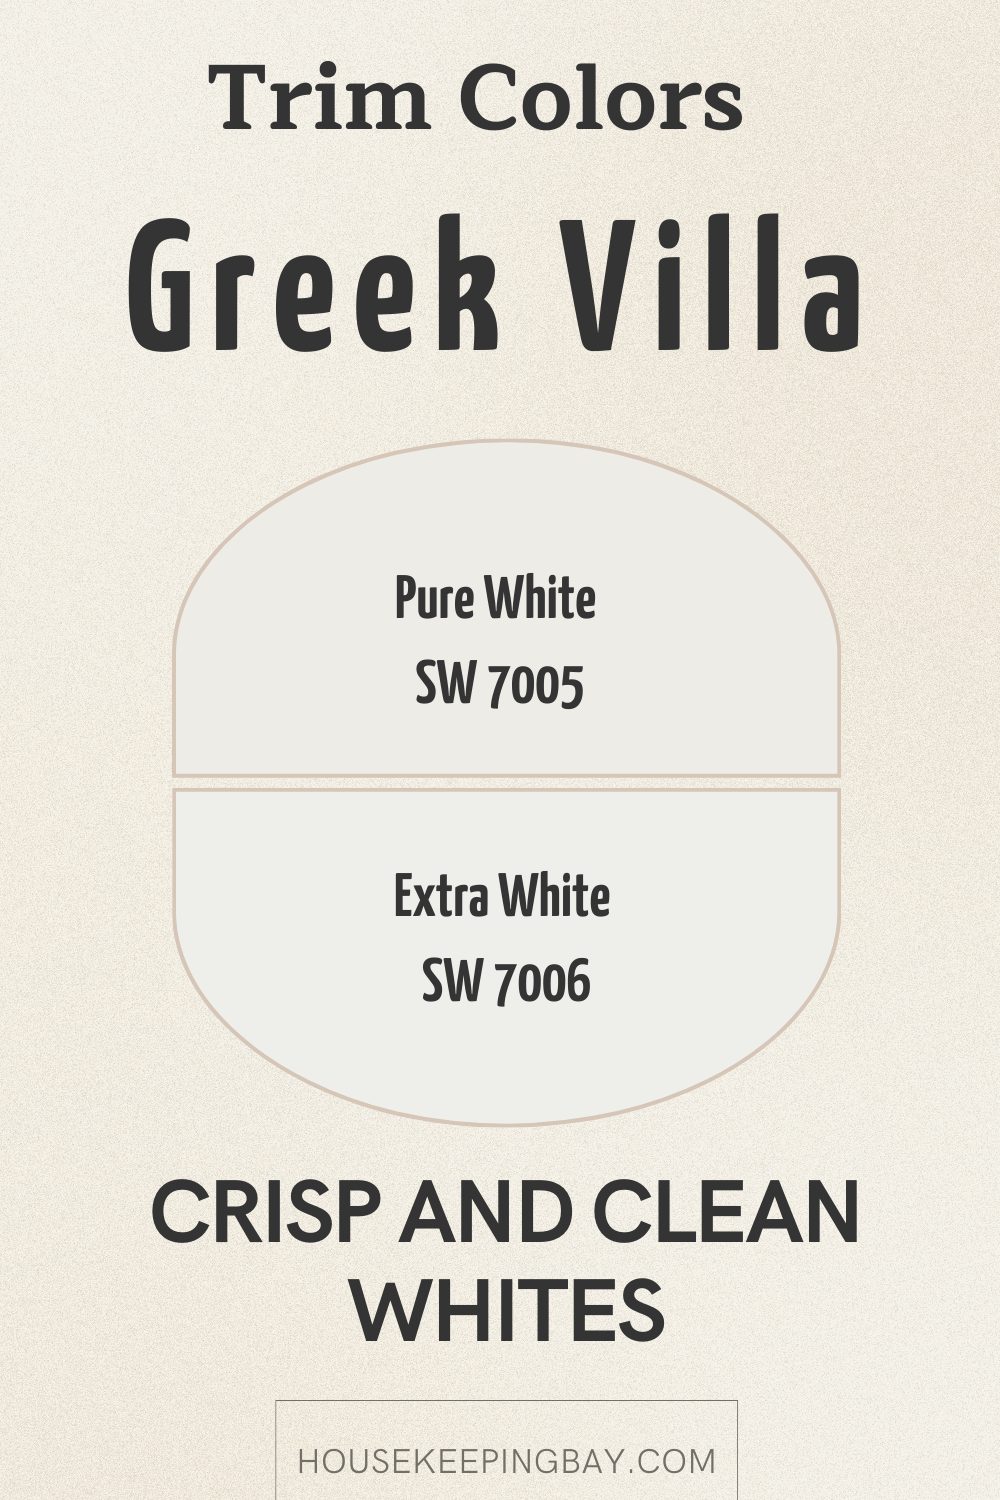 Greek villa trim colors warm whites